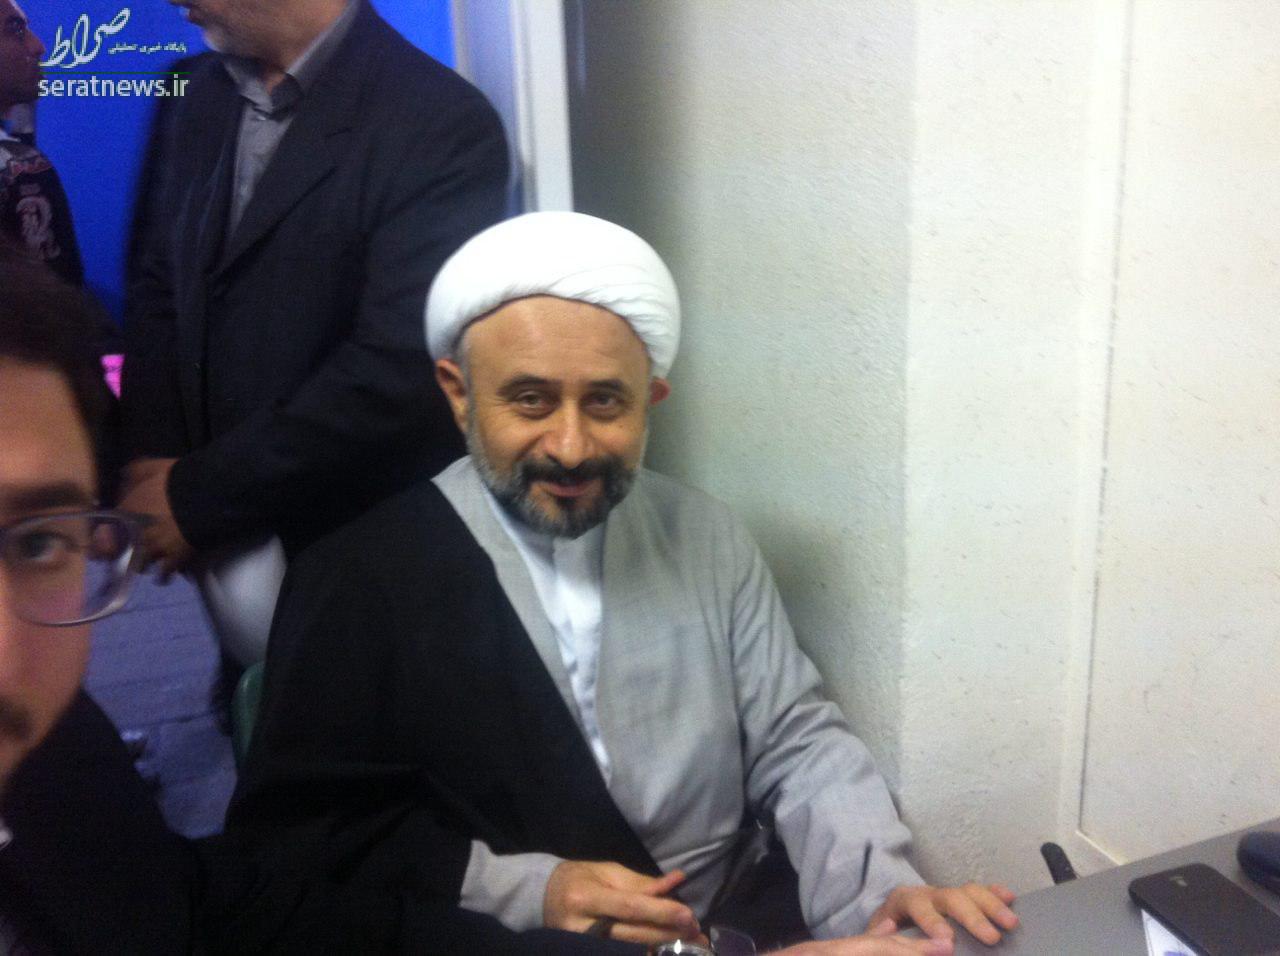 مدعی دست دادن امام حسین(ع) با عمر سعد کاندیدا شد +عکس